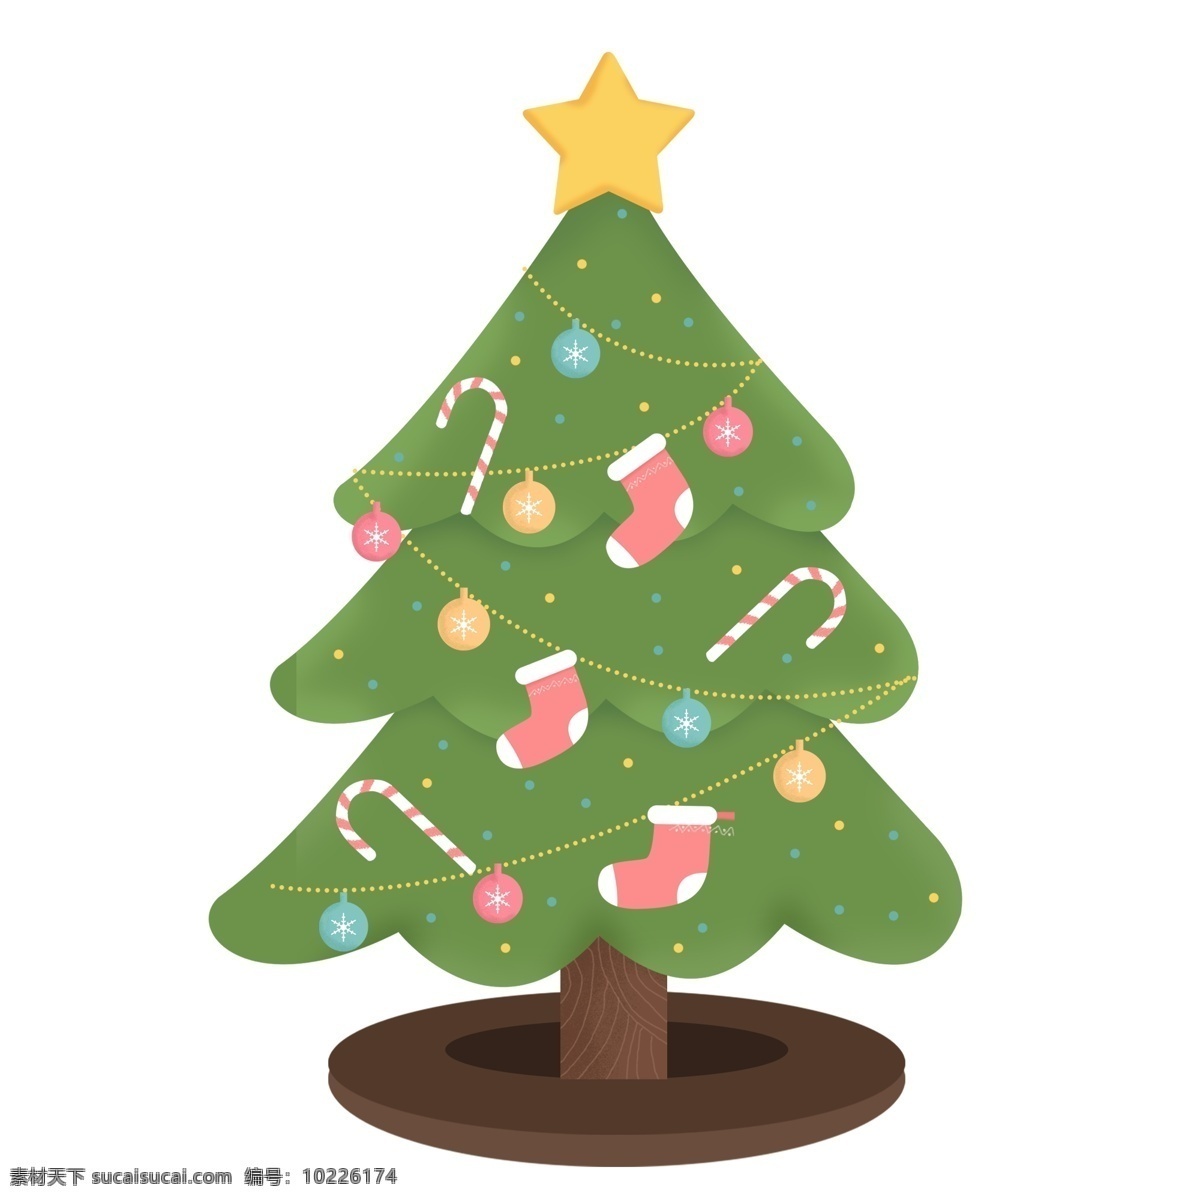 卡通 手绘 圣诞树 清新 小清新 绿色 星星 圣诞元素 节日元素